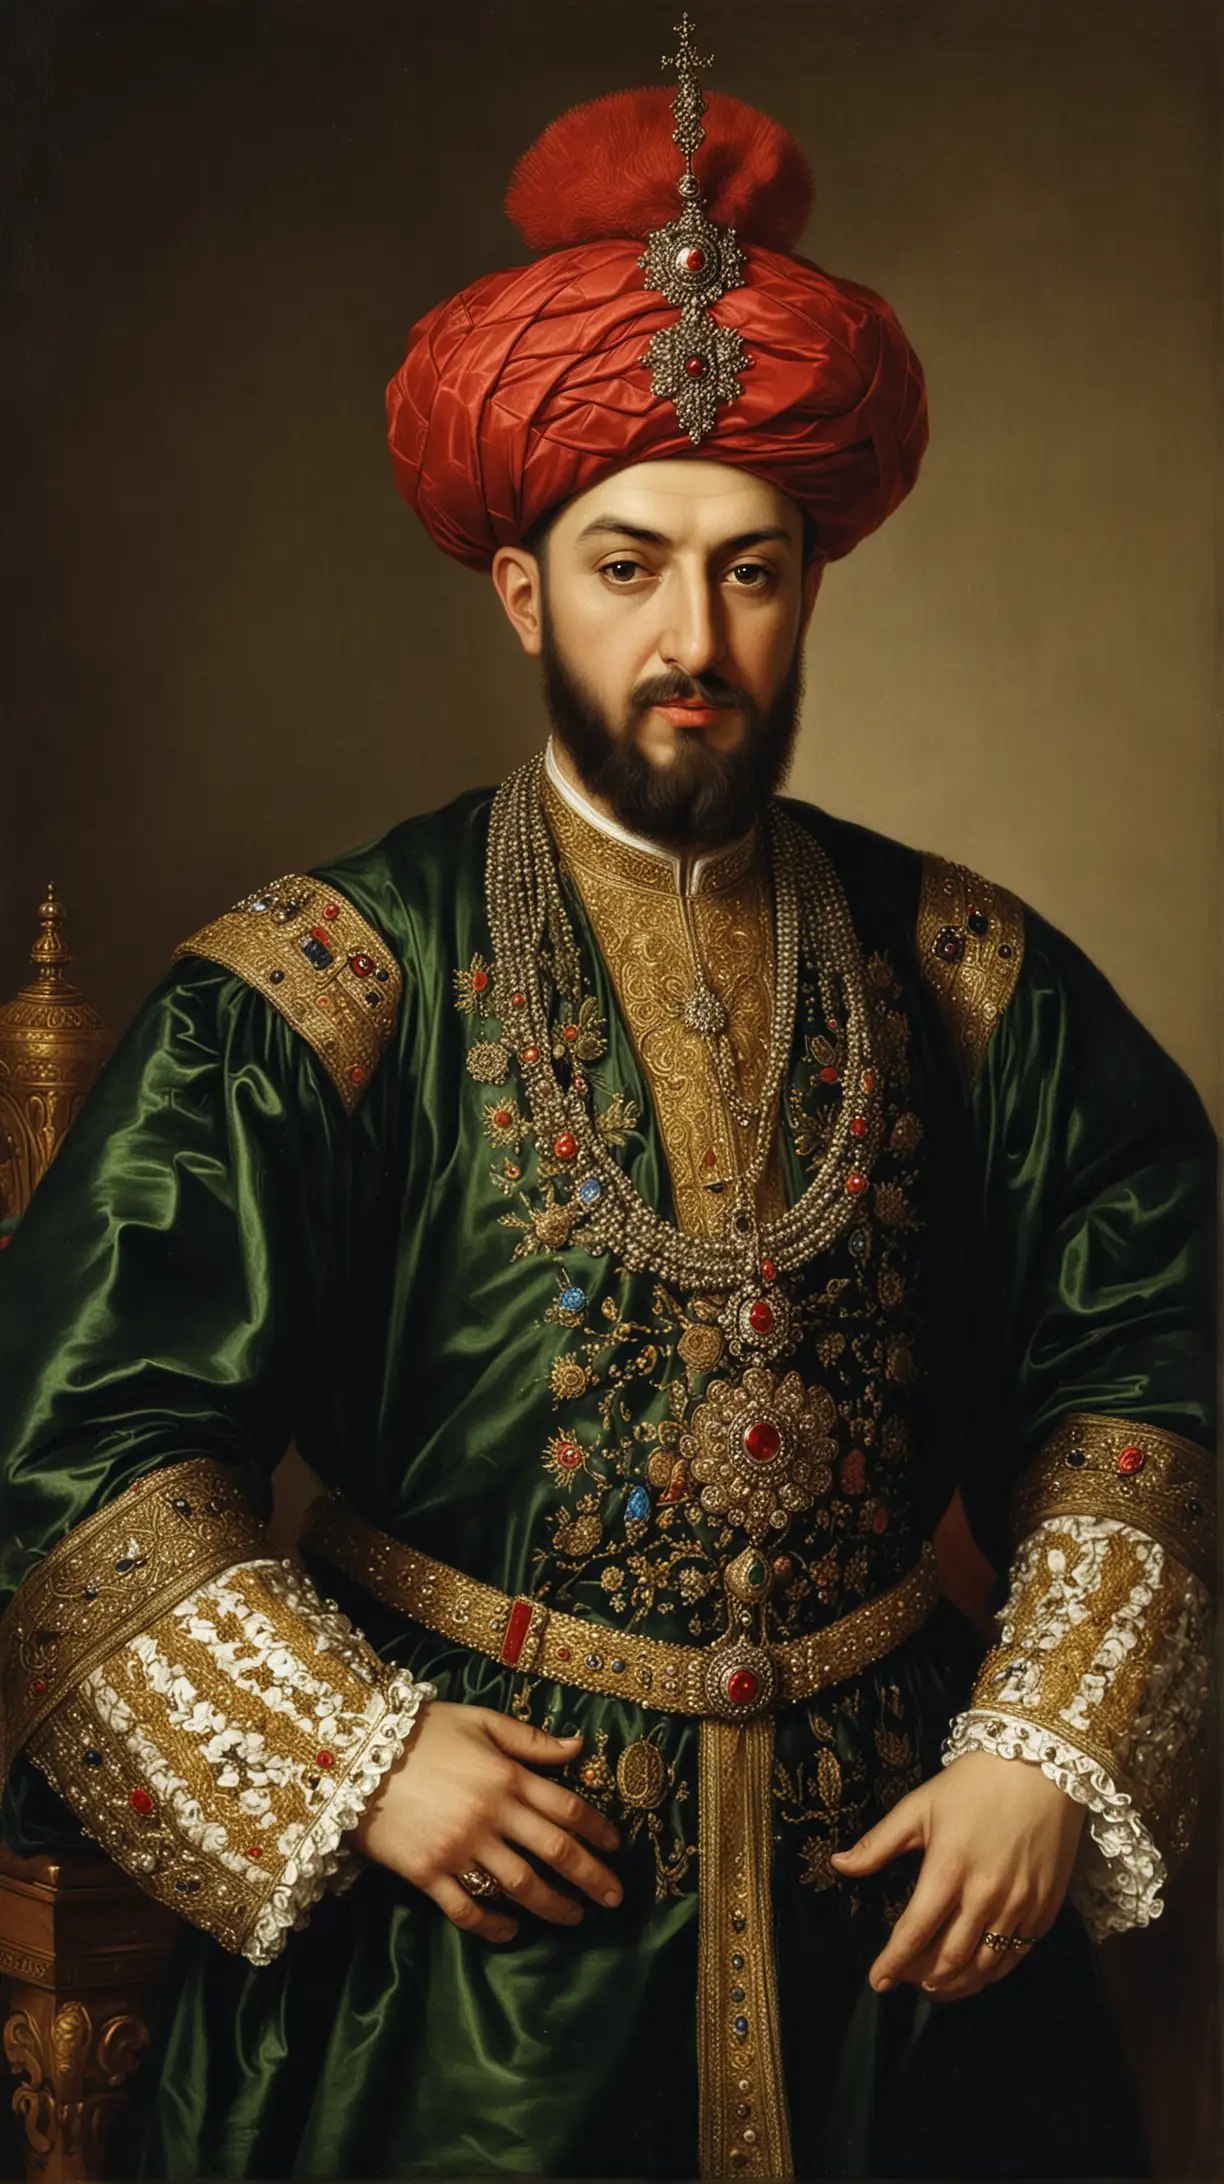 Portrait of Sultan Suleiman II Magnificent Ottoman Ruler in Regal Attire